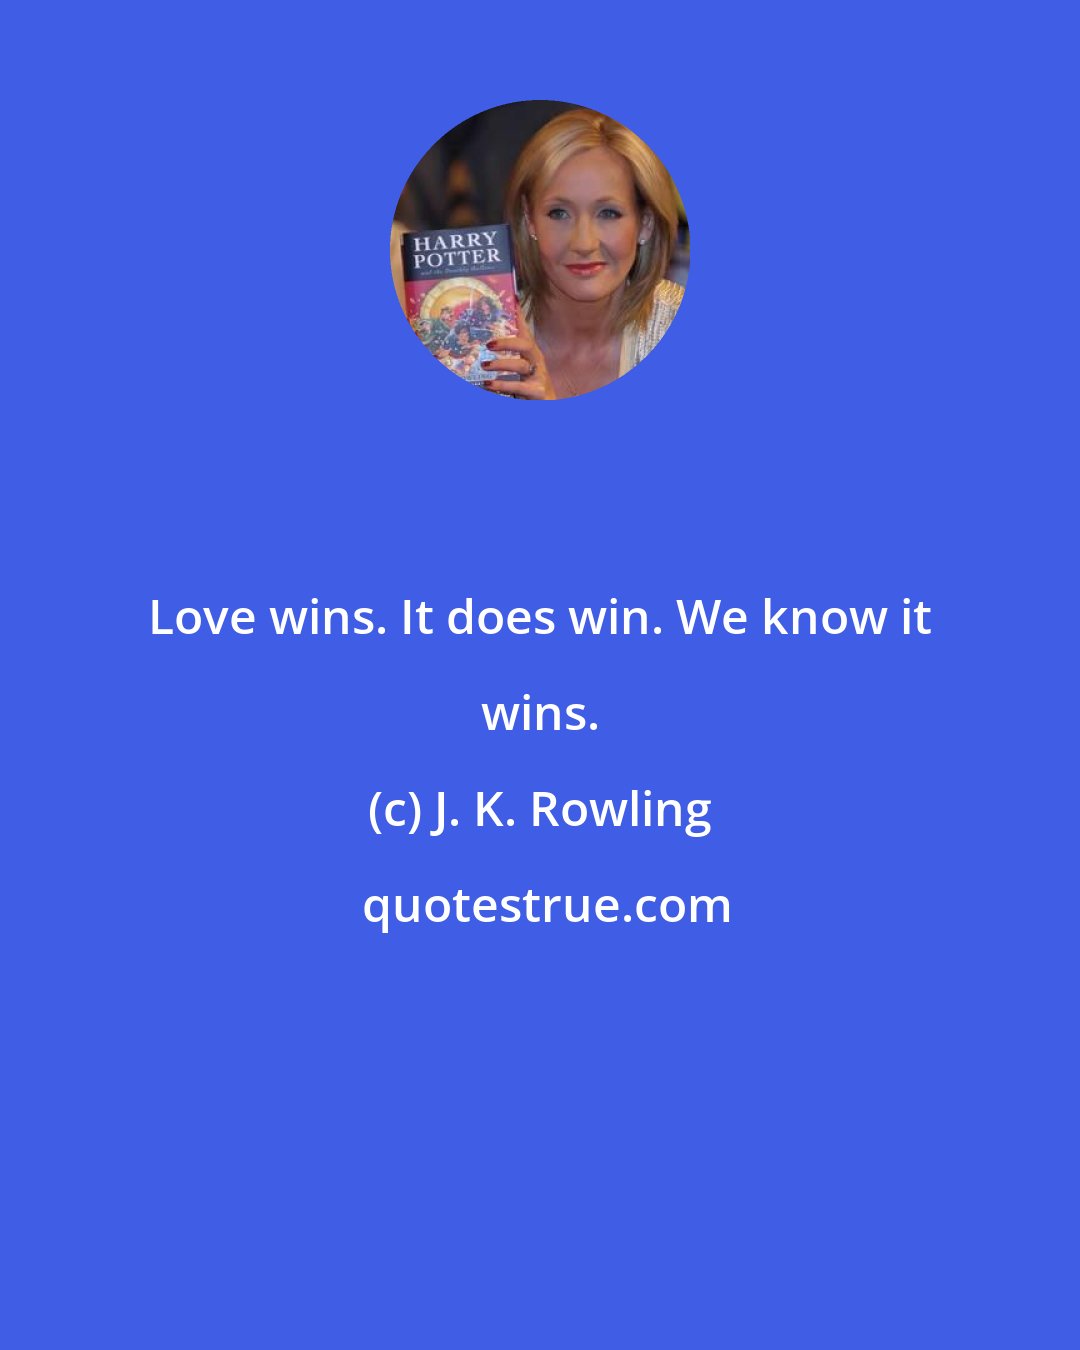 J. K. Rowling: Love wins. It does win. We know it wins.